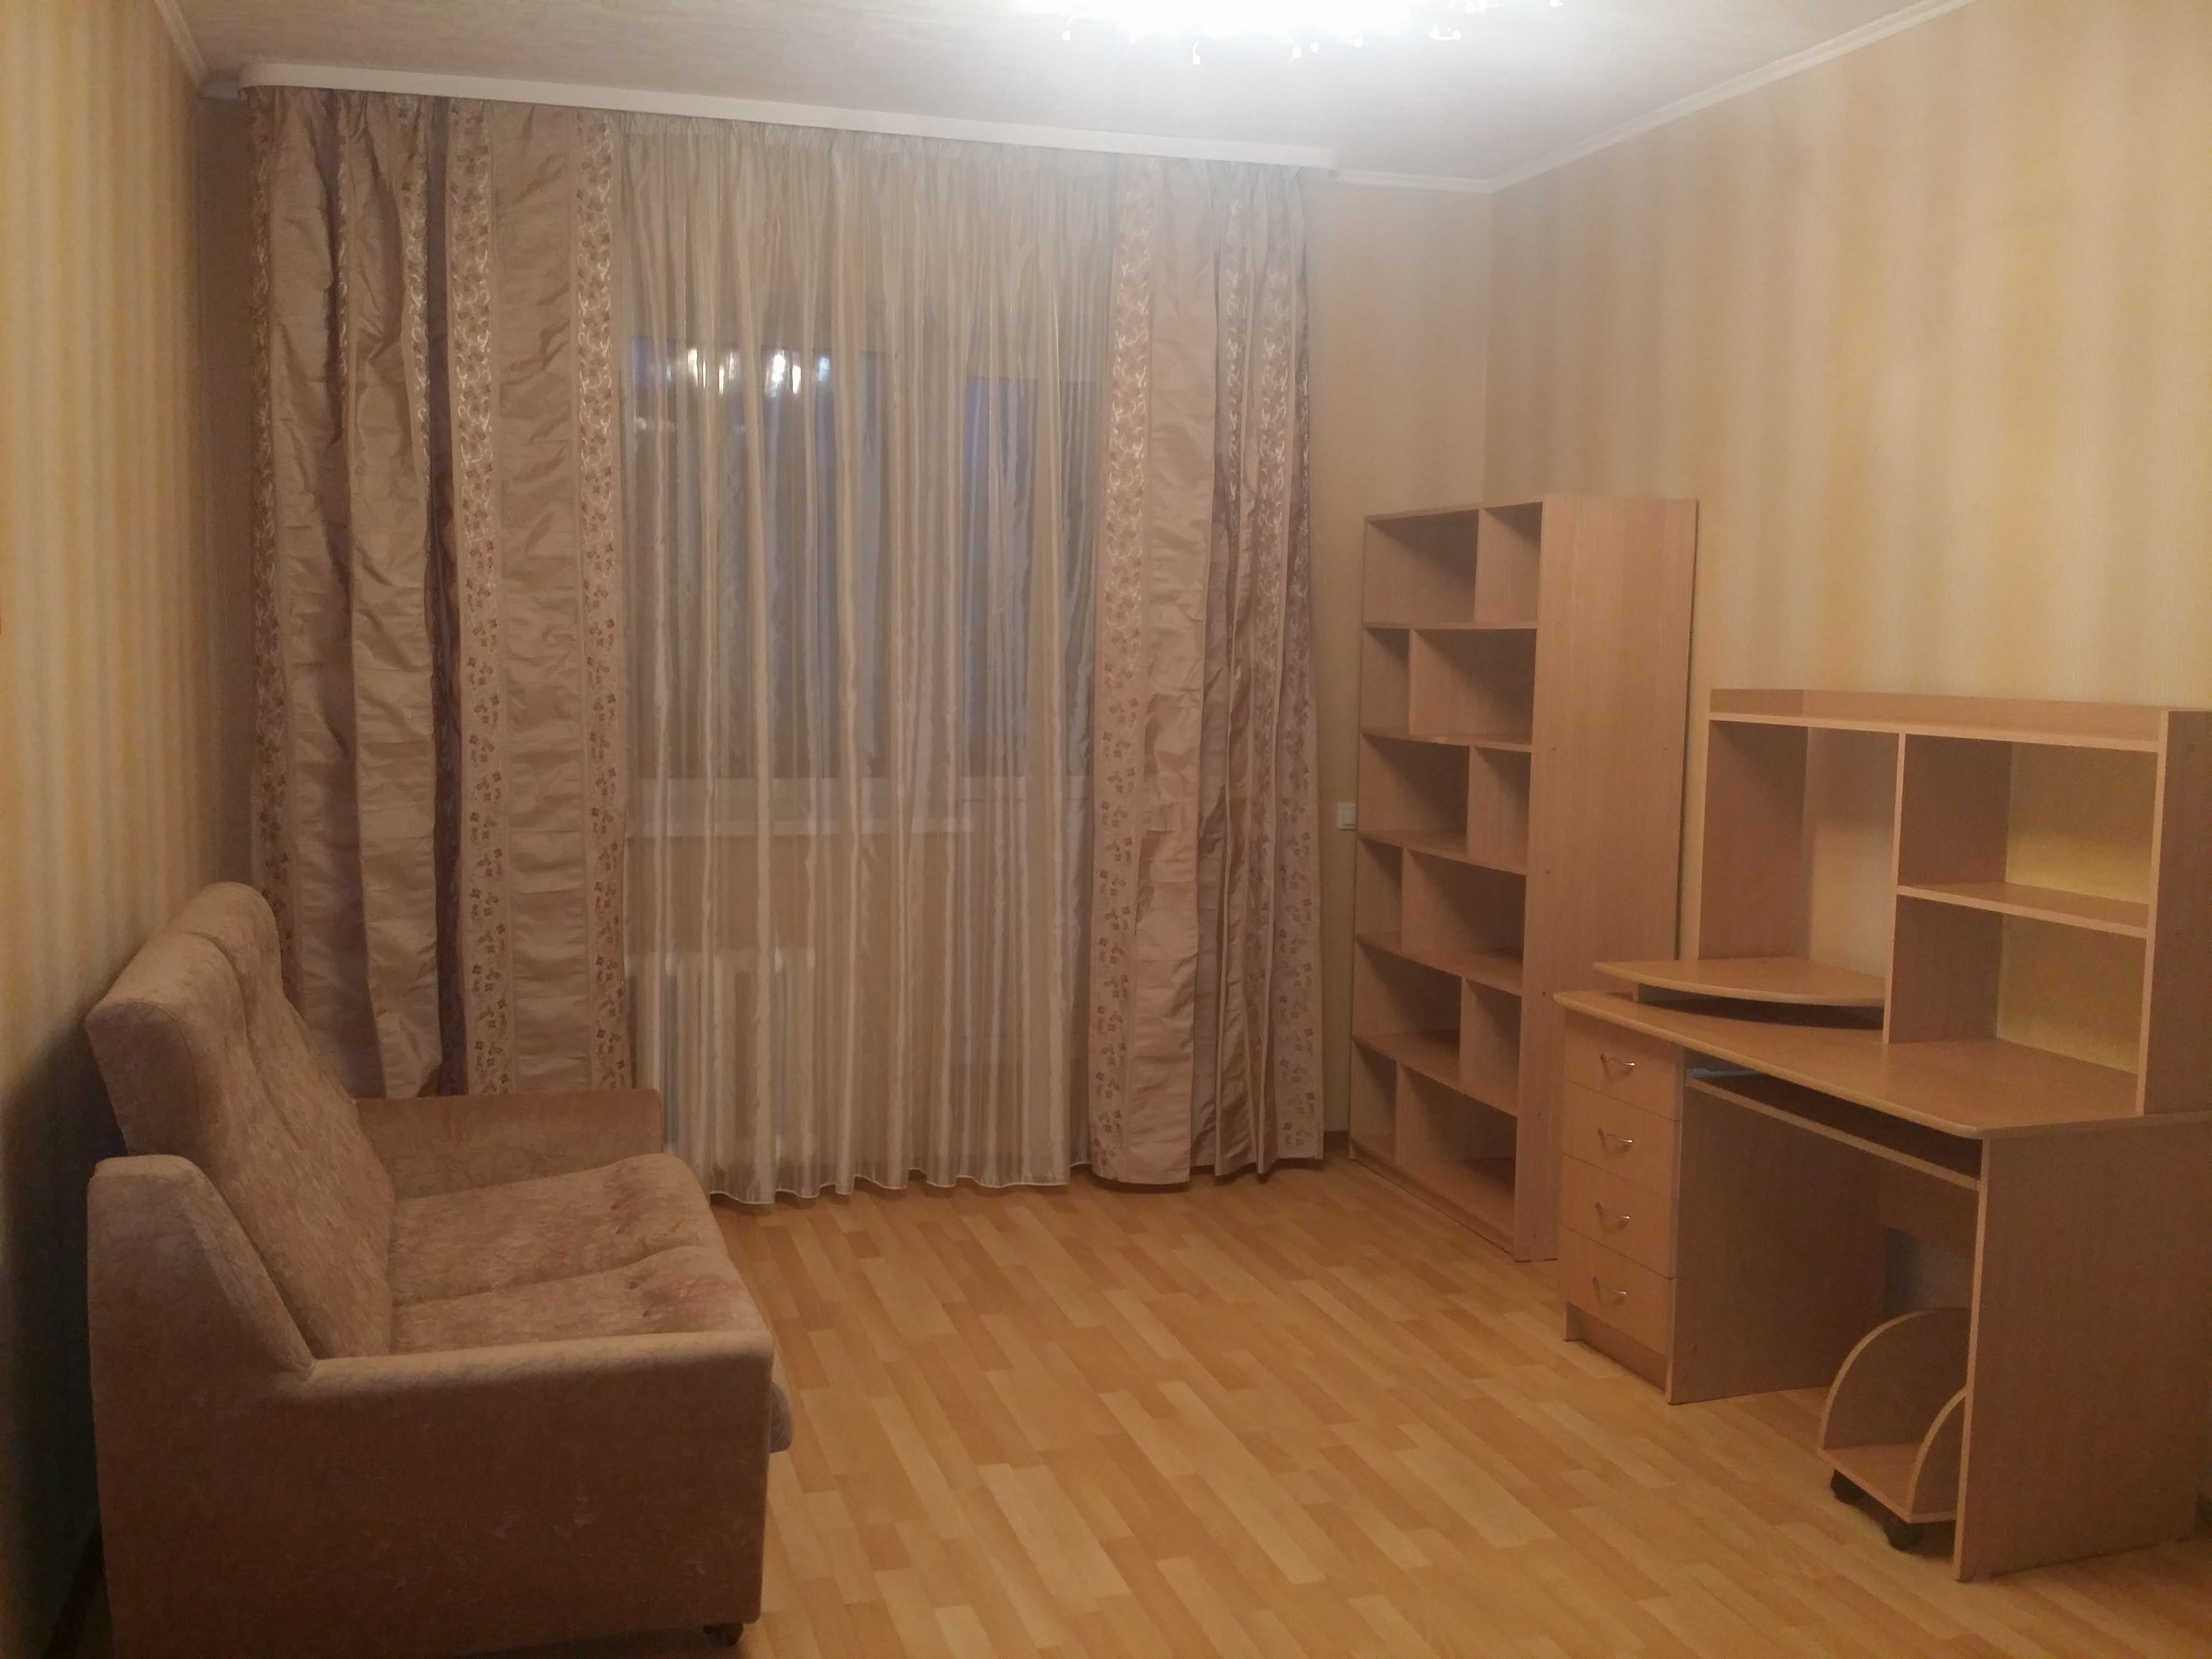 Однокомнатные квартиры в Железнодорожном районе города Ульяновска. Авито ульяновск купить однокомнатную